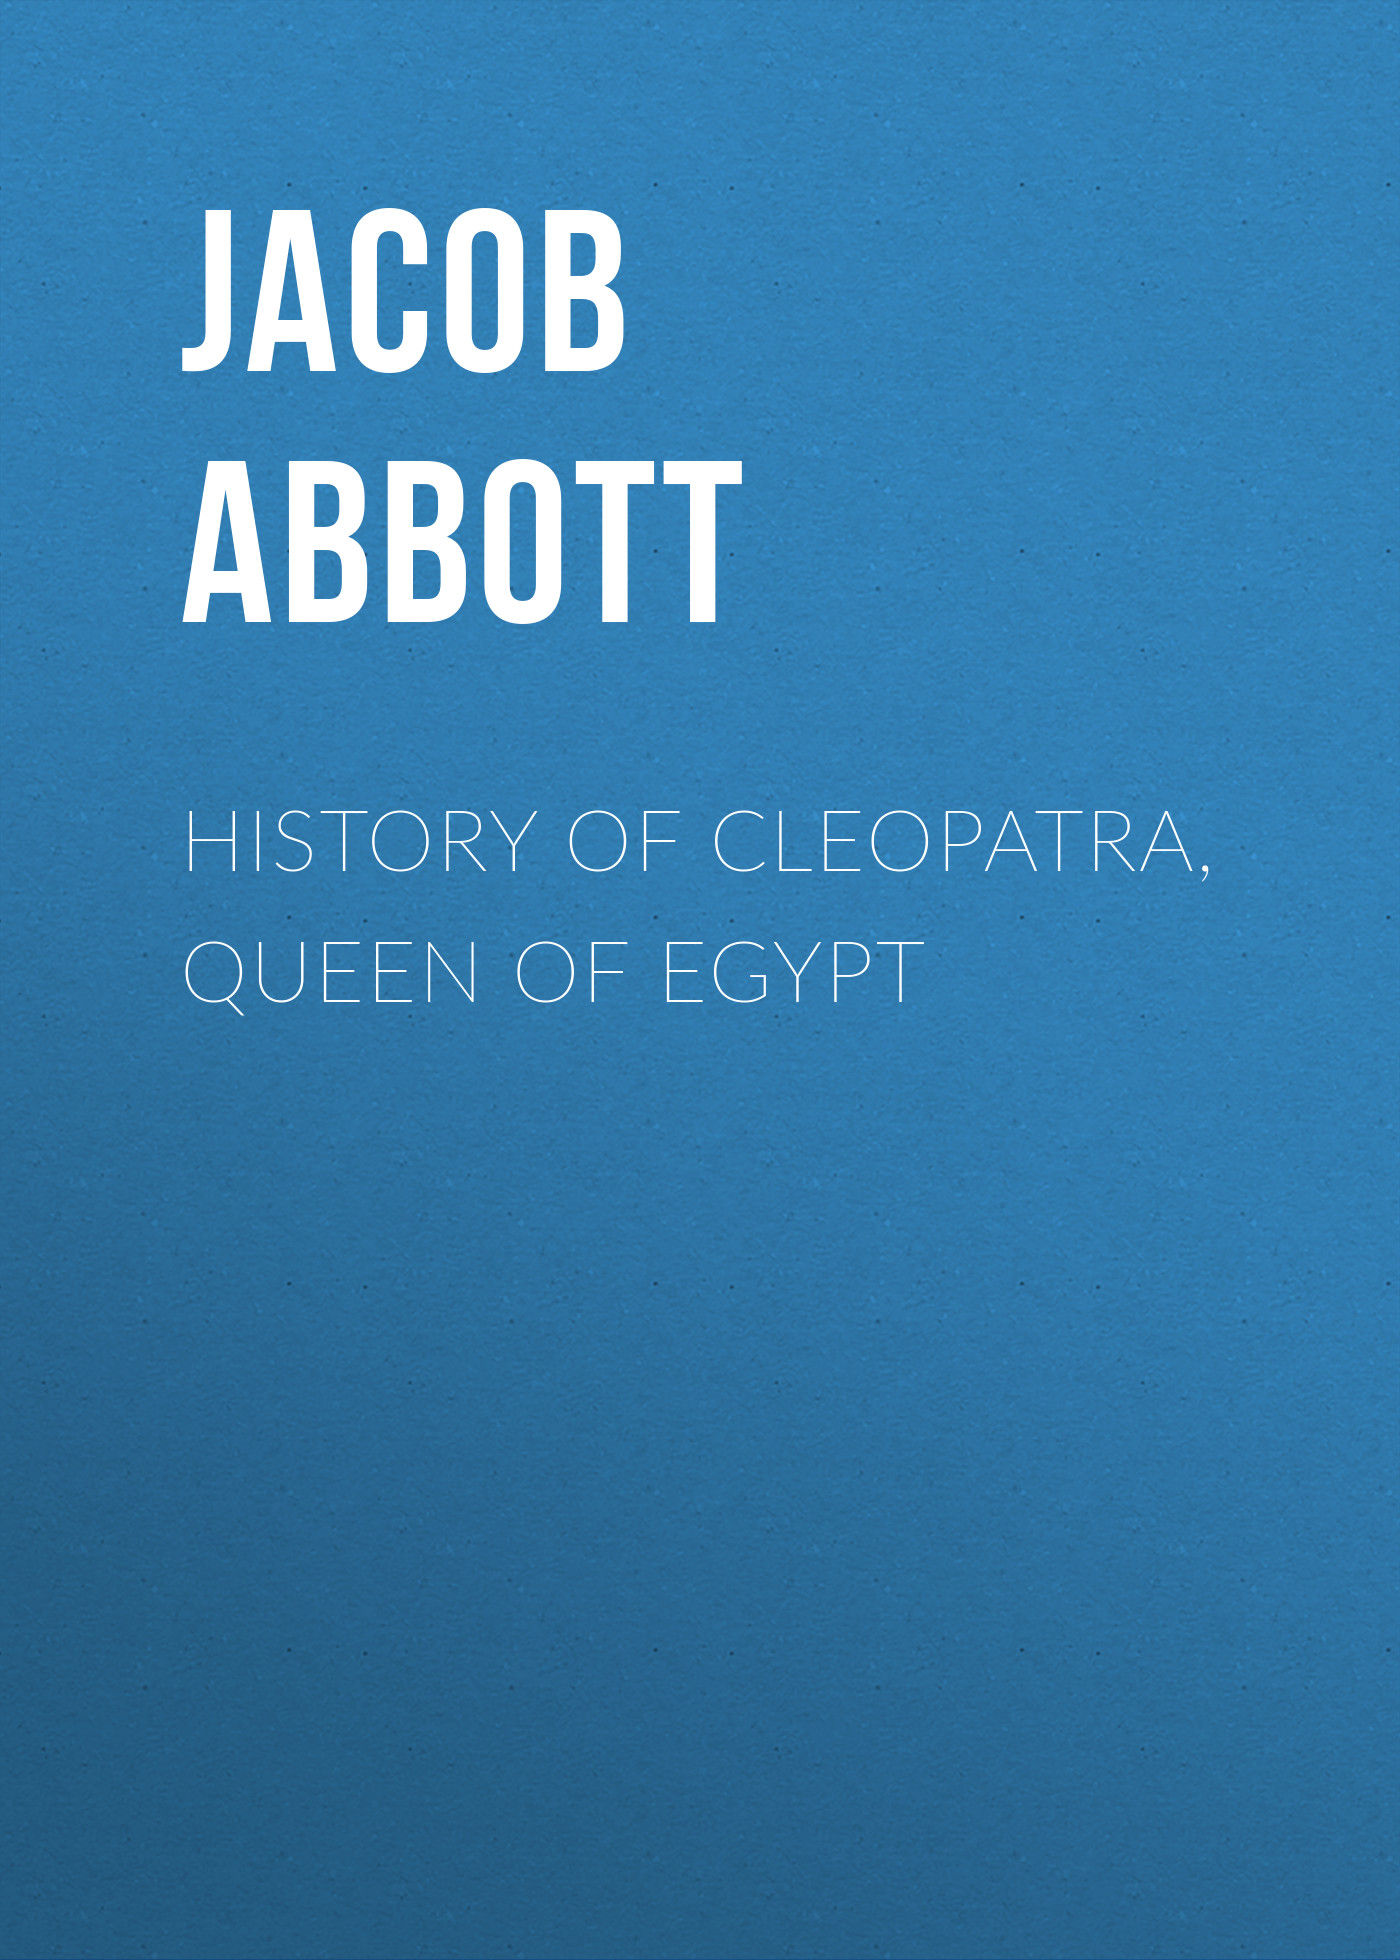 Книга History of Cleopatra, Queen of Egypt из серии , созданная Jacob Abbott, может относится к жанру Зарубежная старинная литература, Зарубежная классика. Стоимость электронной книги History of Cleopatra, Queen of Egypt с идентификатором 24166060 составляет 0 руб.